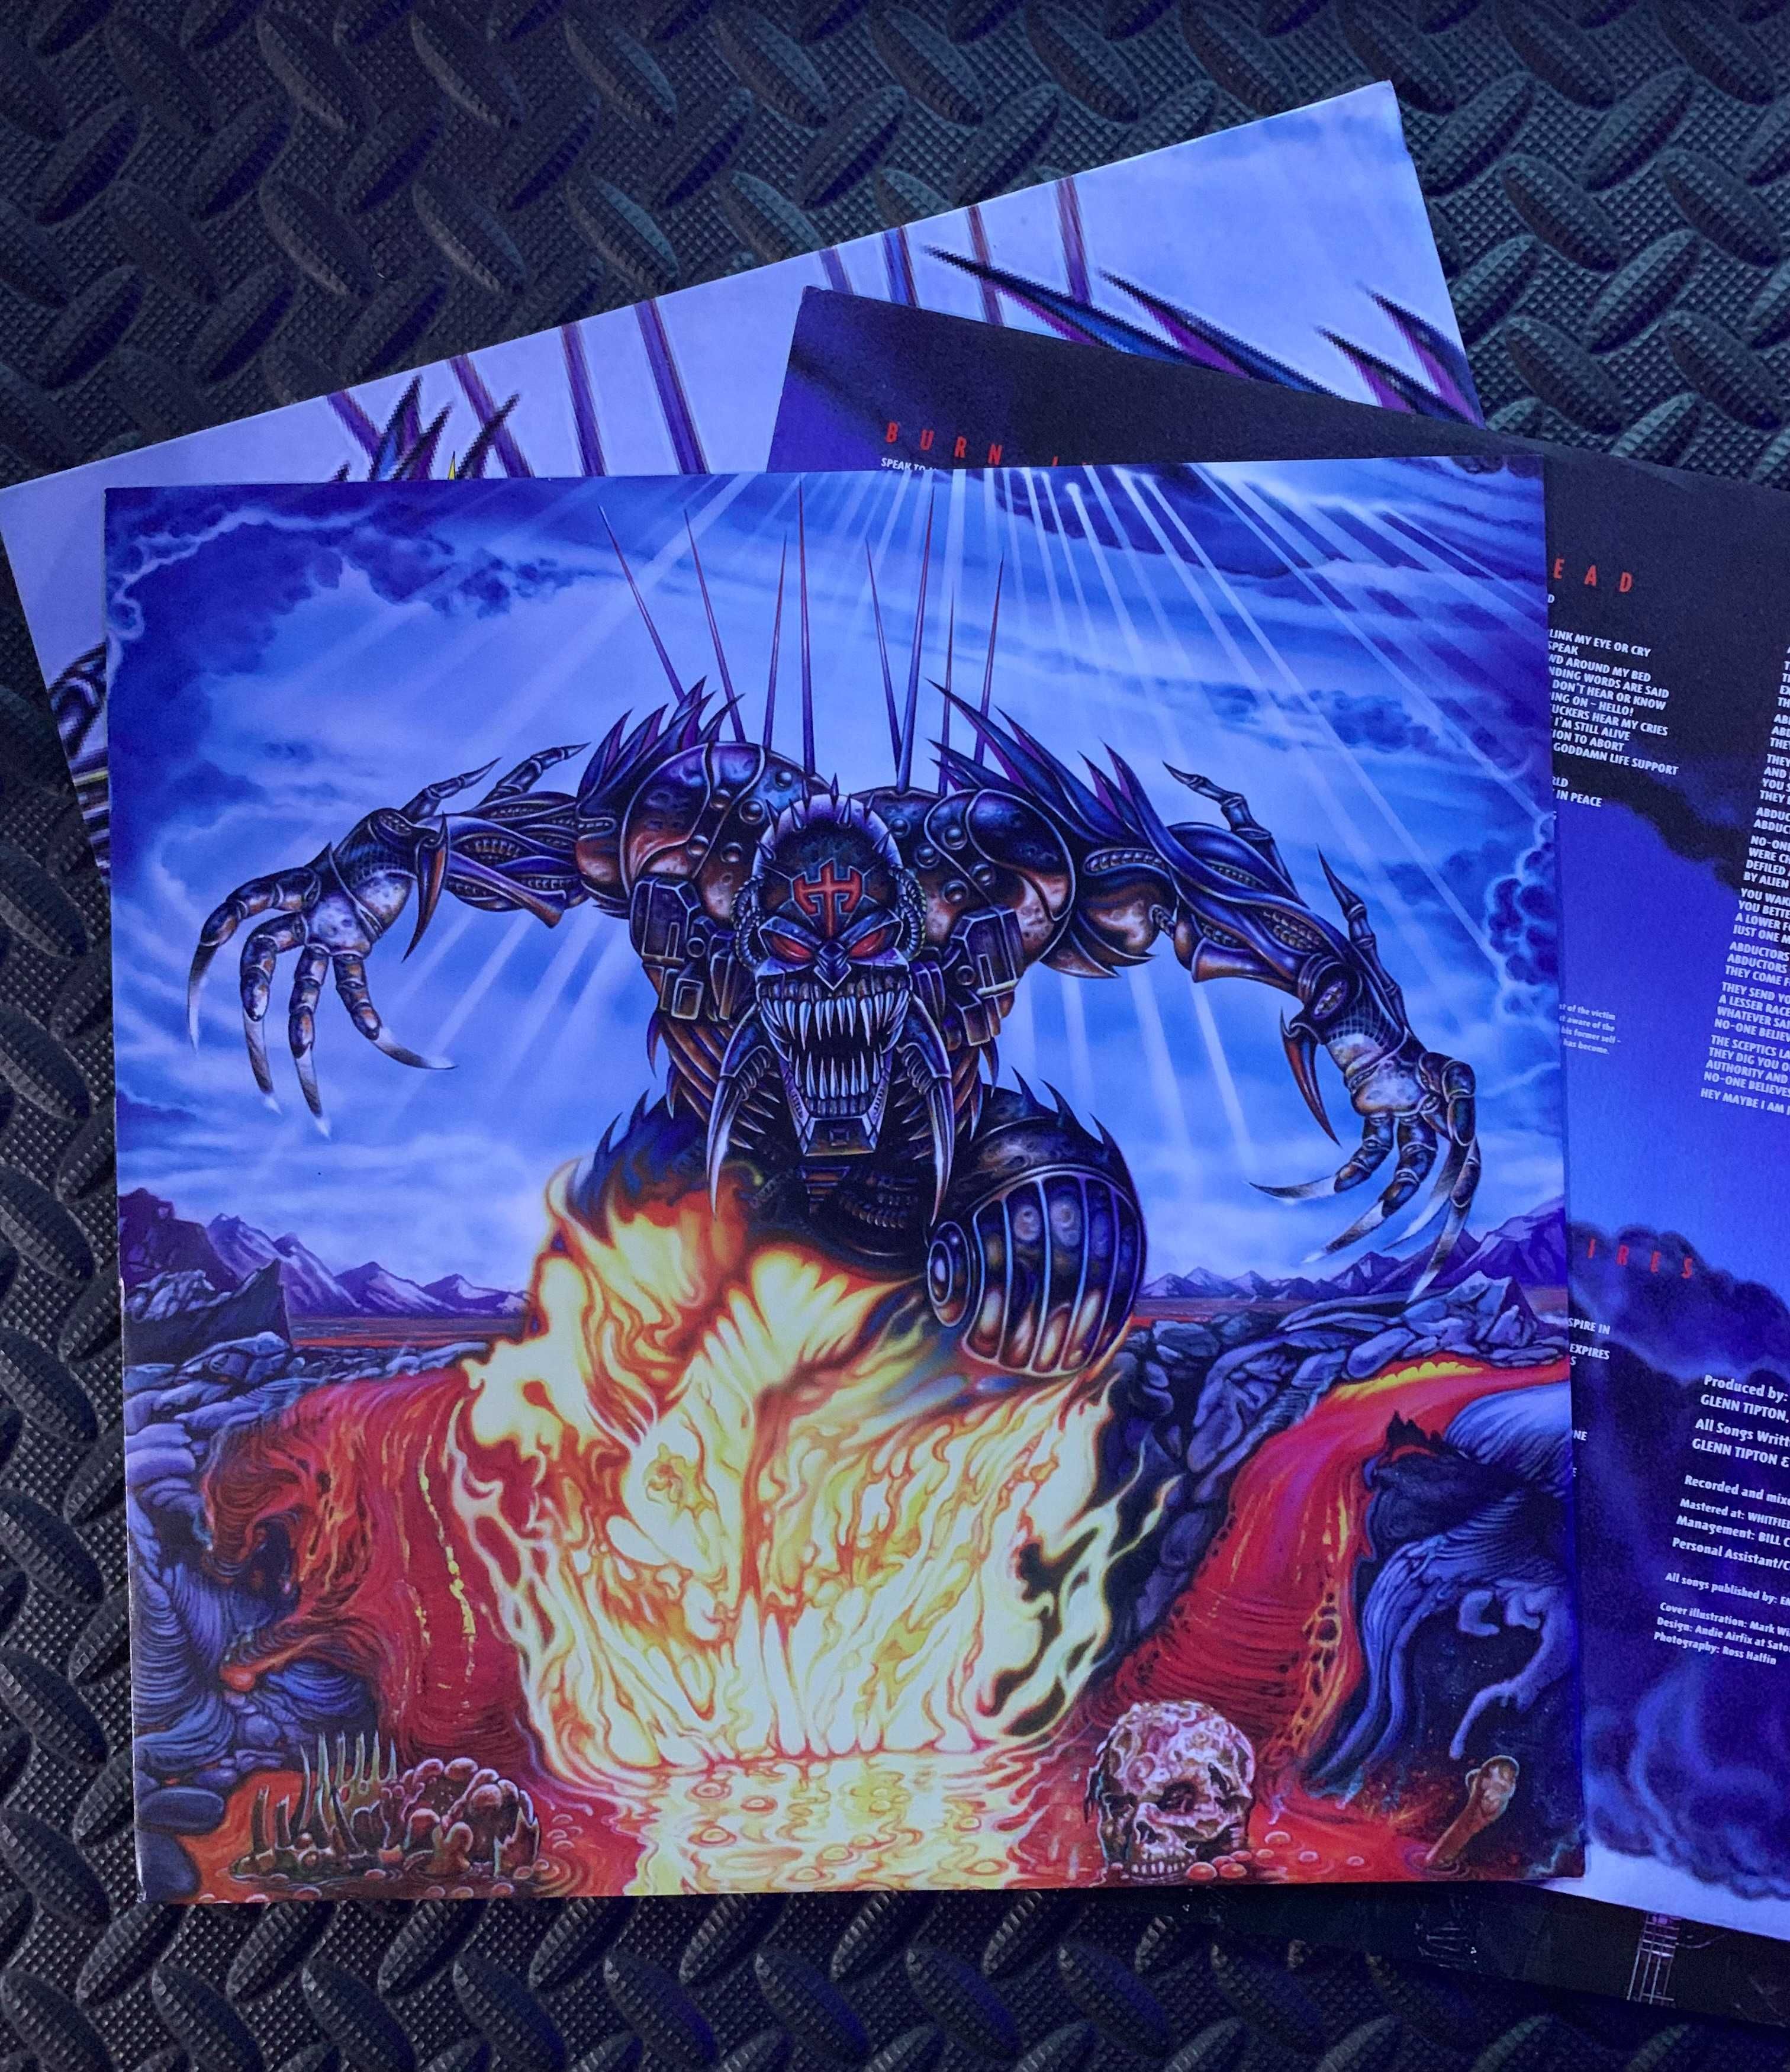 Judas Priest ‎– Jugulator, oryginał jedyne wydanie 1997r.